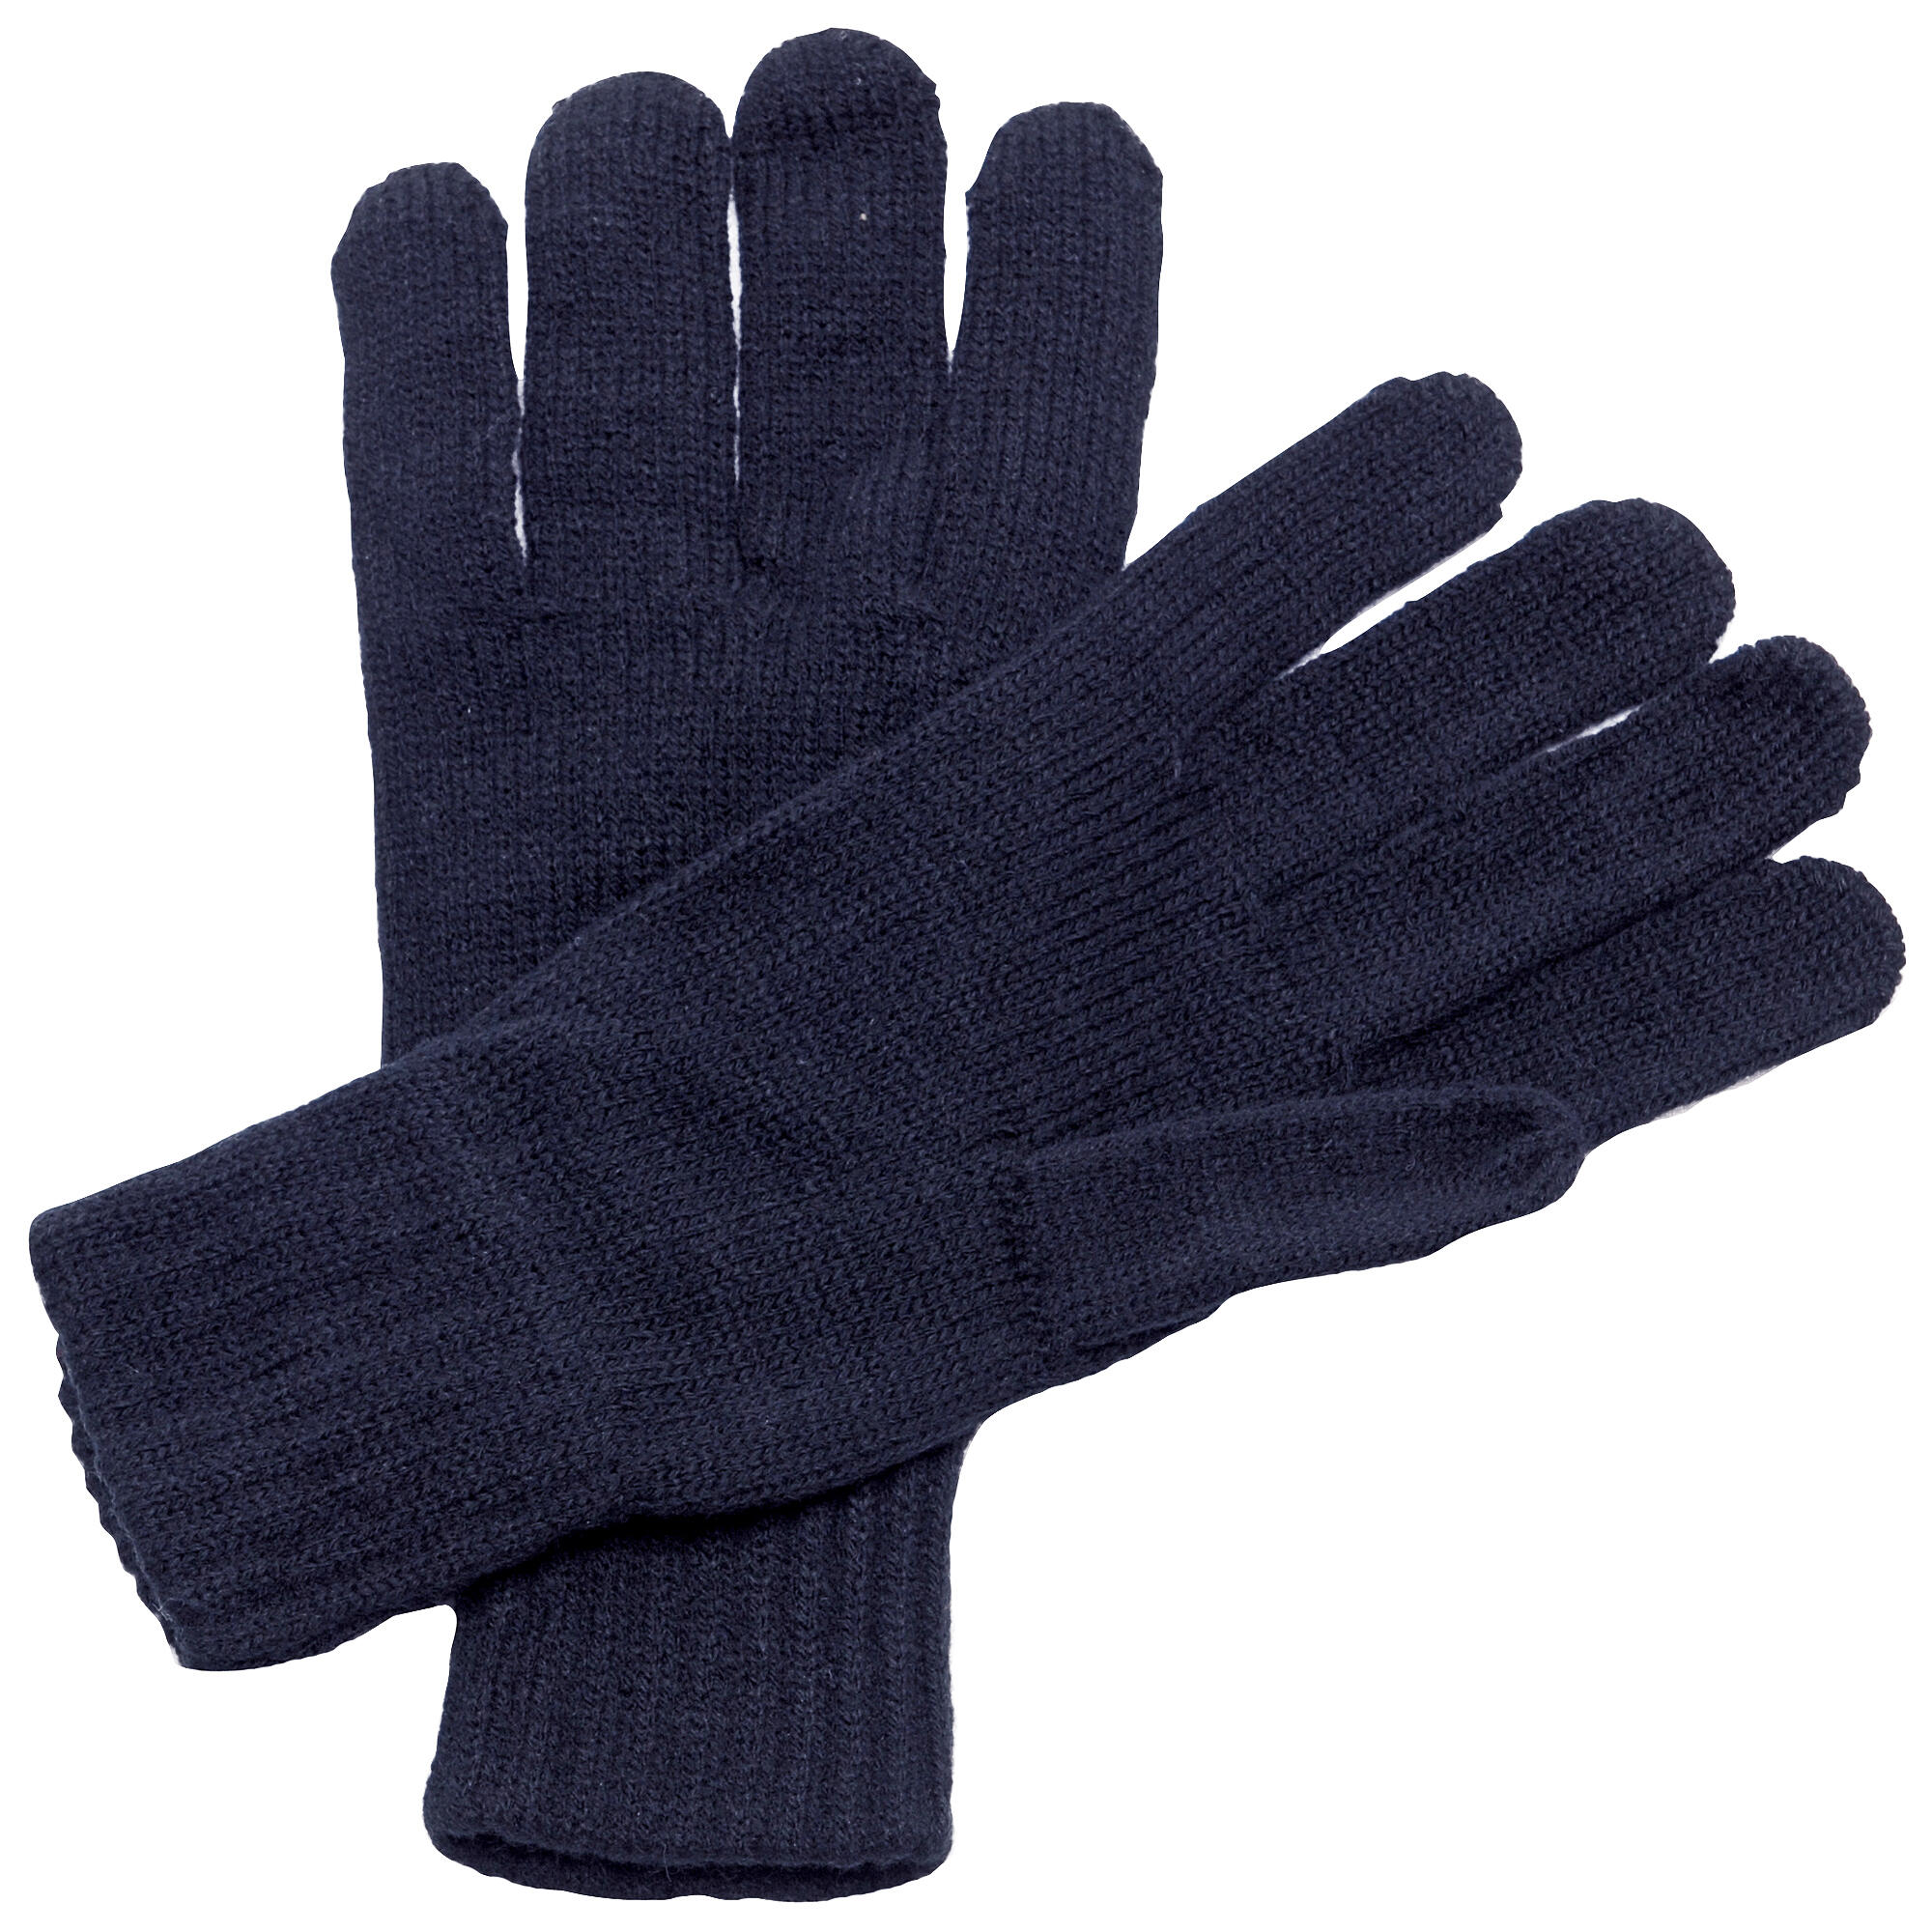 REGATTA Unisex Knitted Winter Gloves (Navy)